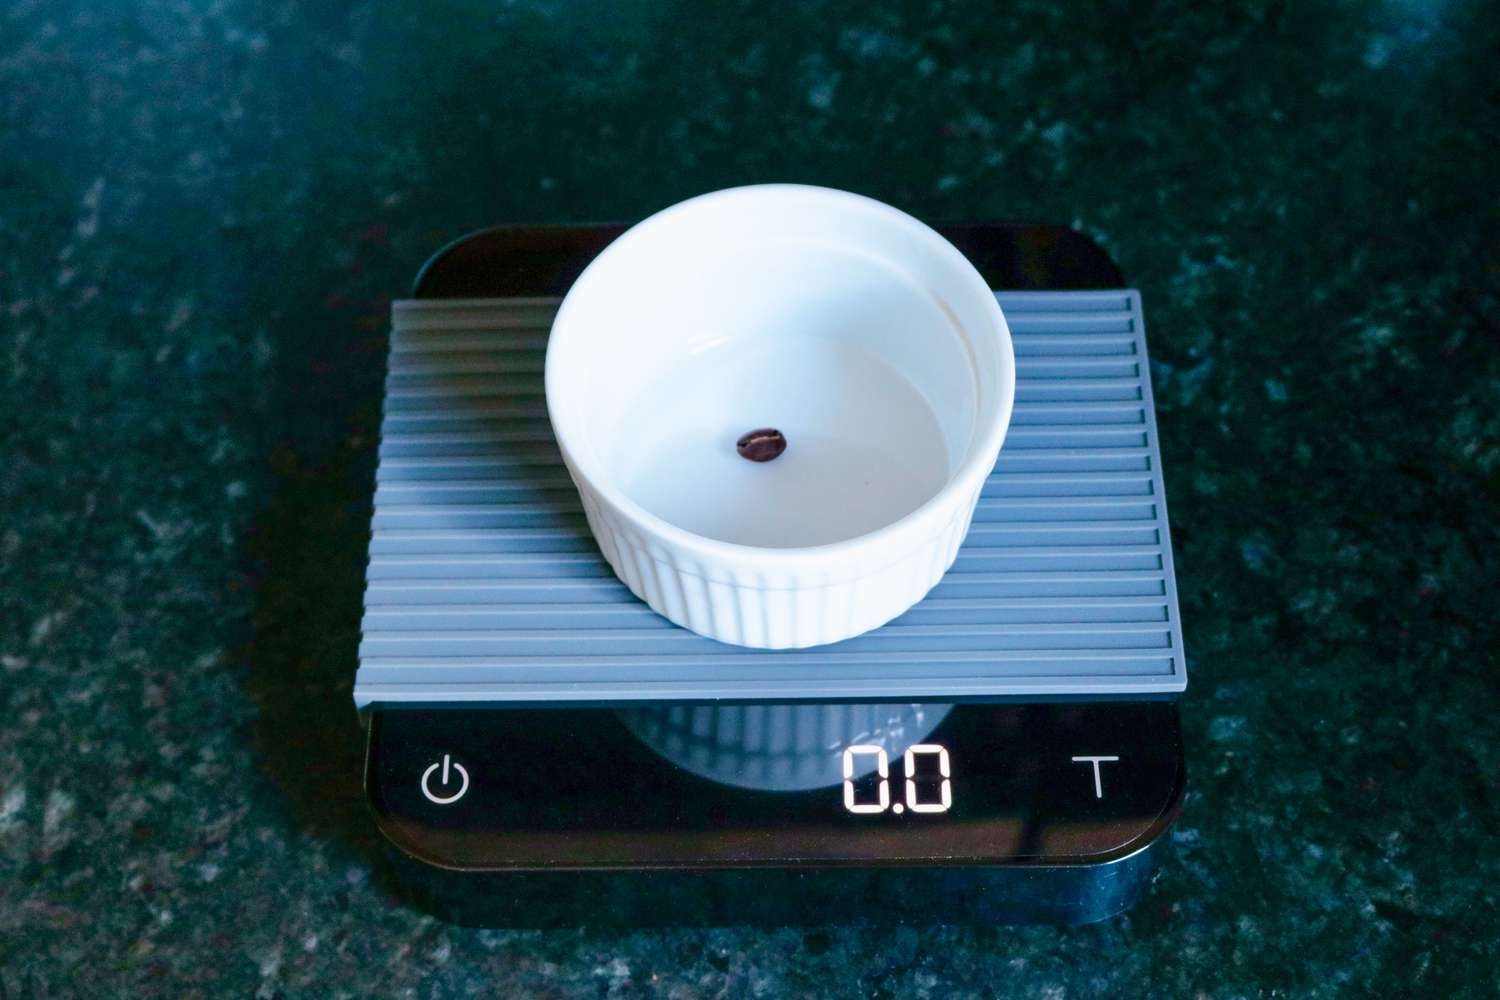 用acaia珍珠咖啡秤在小模子里称量一颗咖啡豆。